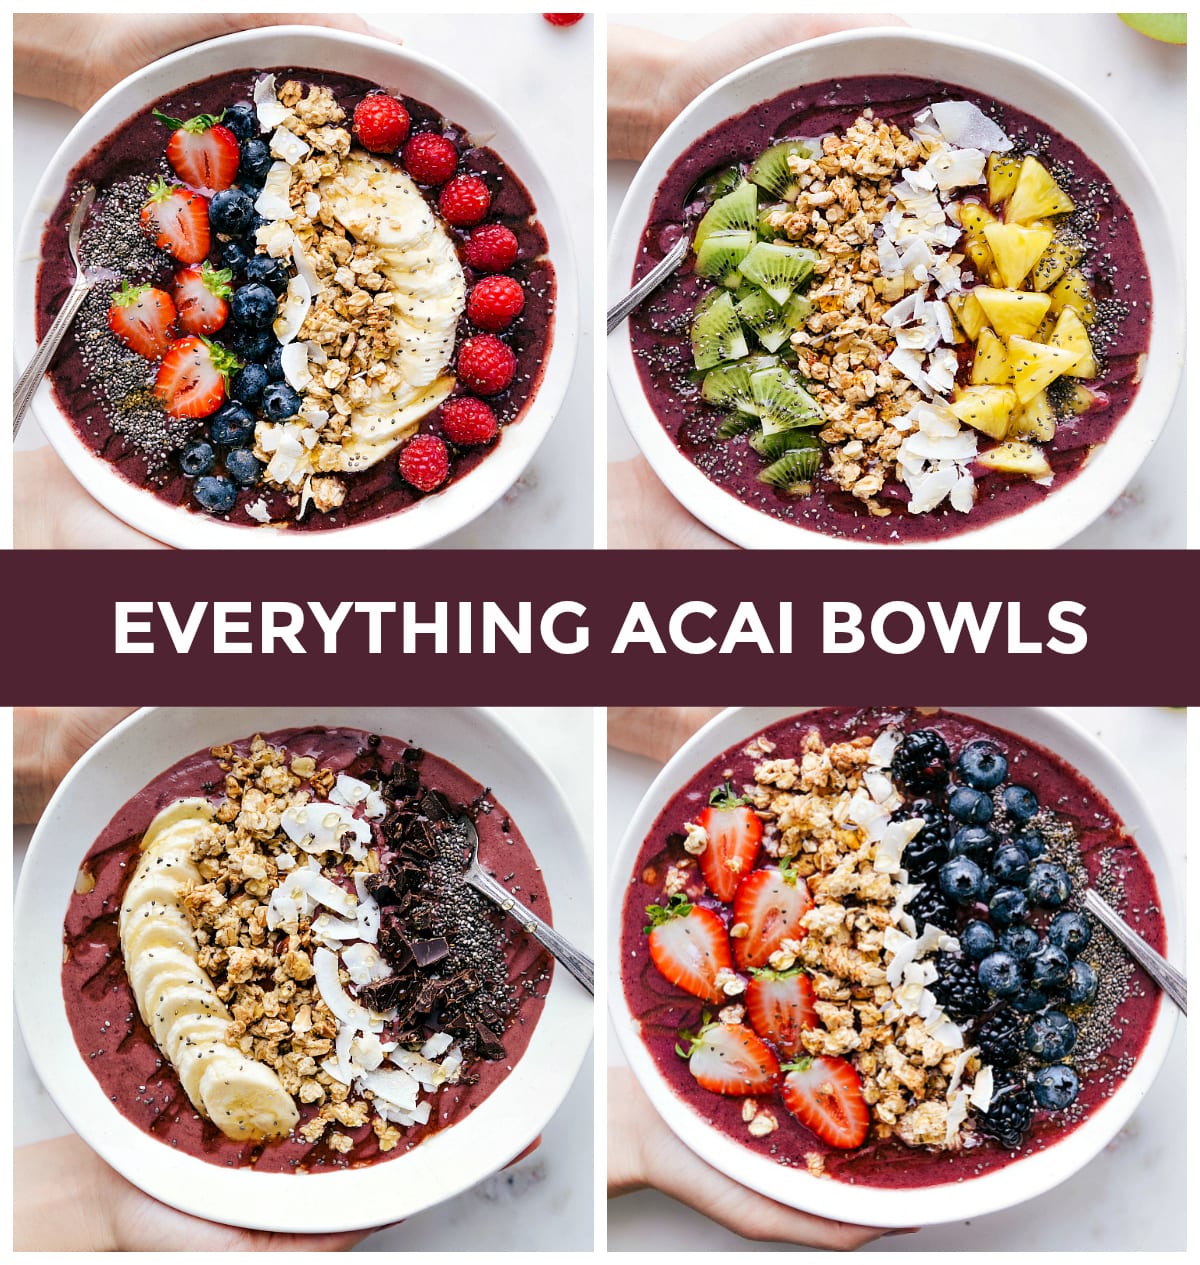 Acai Bowls - Our Original Smoothie Bowl